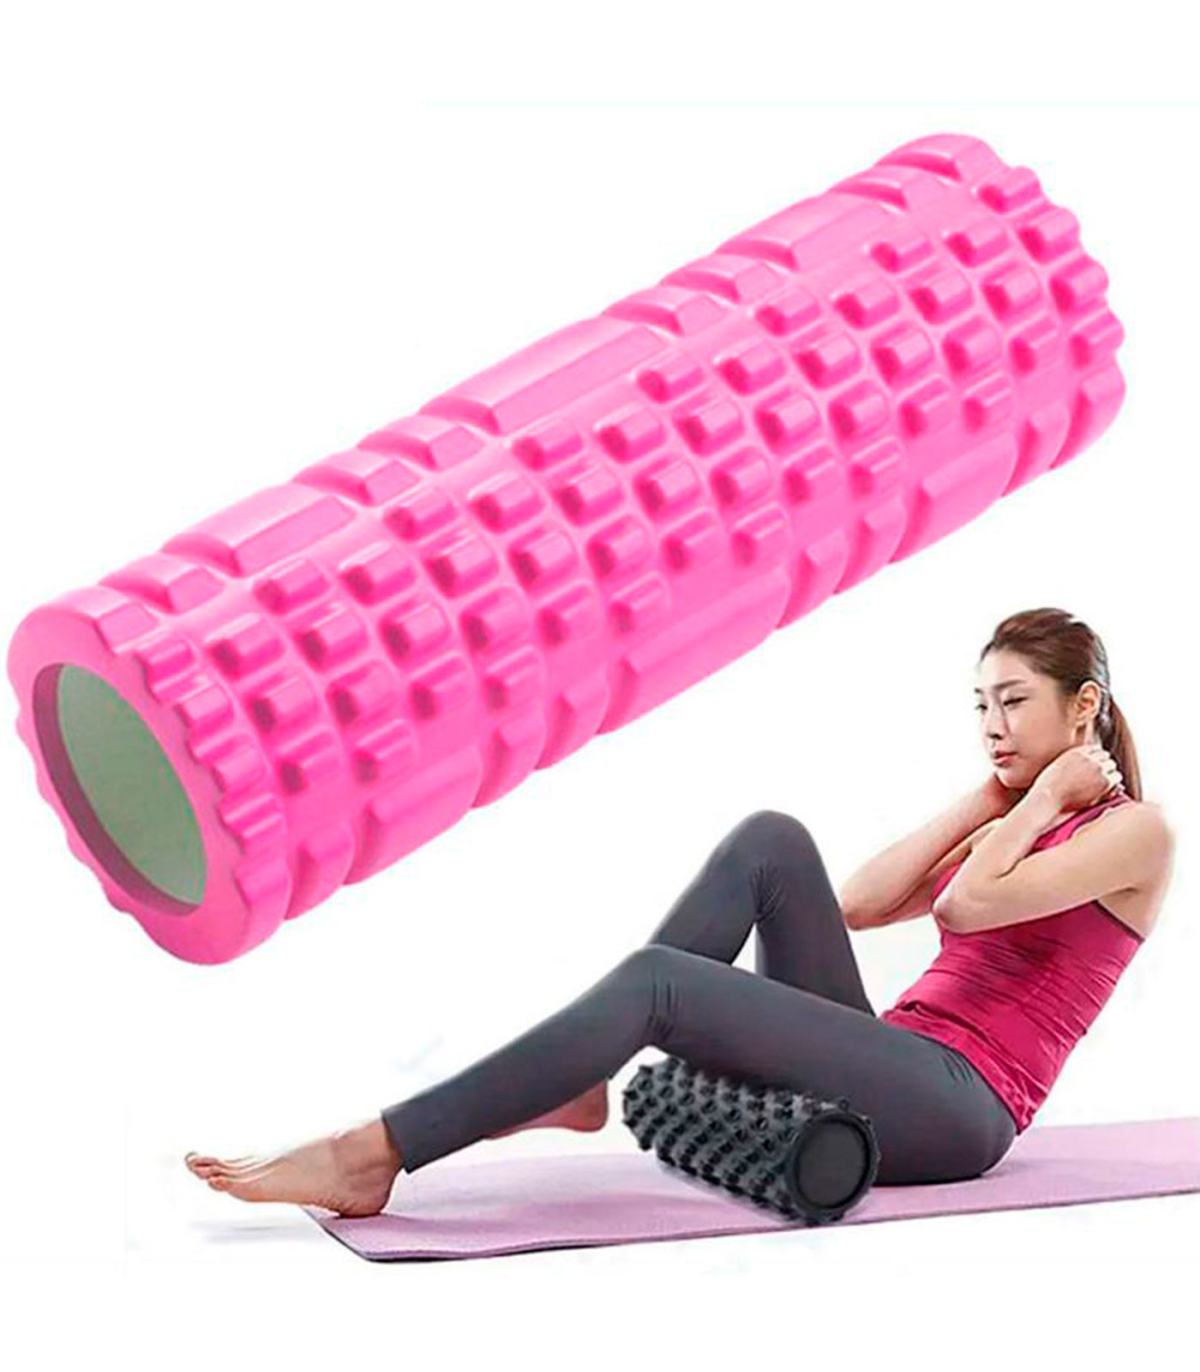 Tradineur - Rodillo de yoga, gomaespuma, cilindro de movilidad y masaje,  múltiples posturas, estiramientos, fitness, automasaje